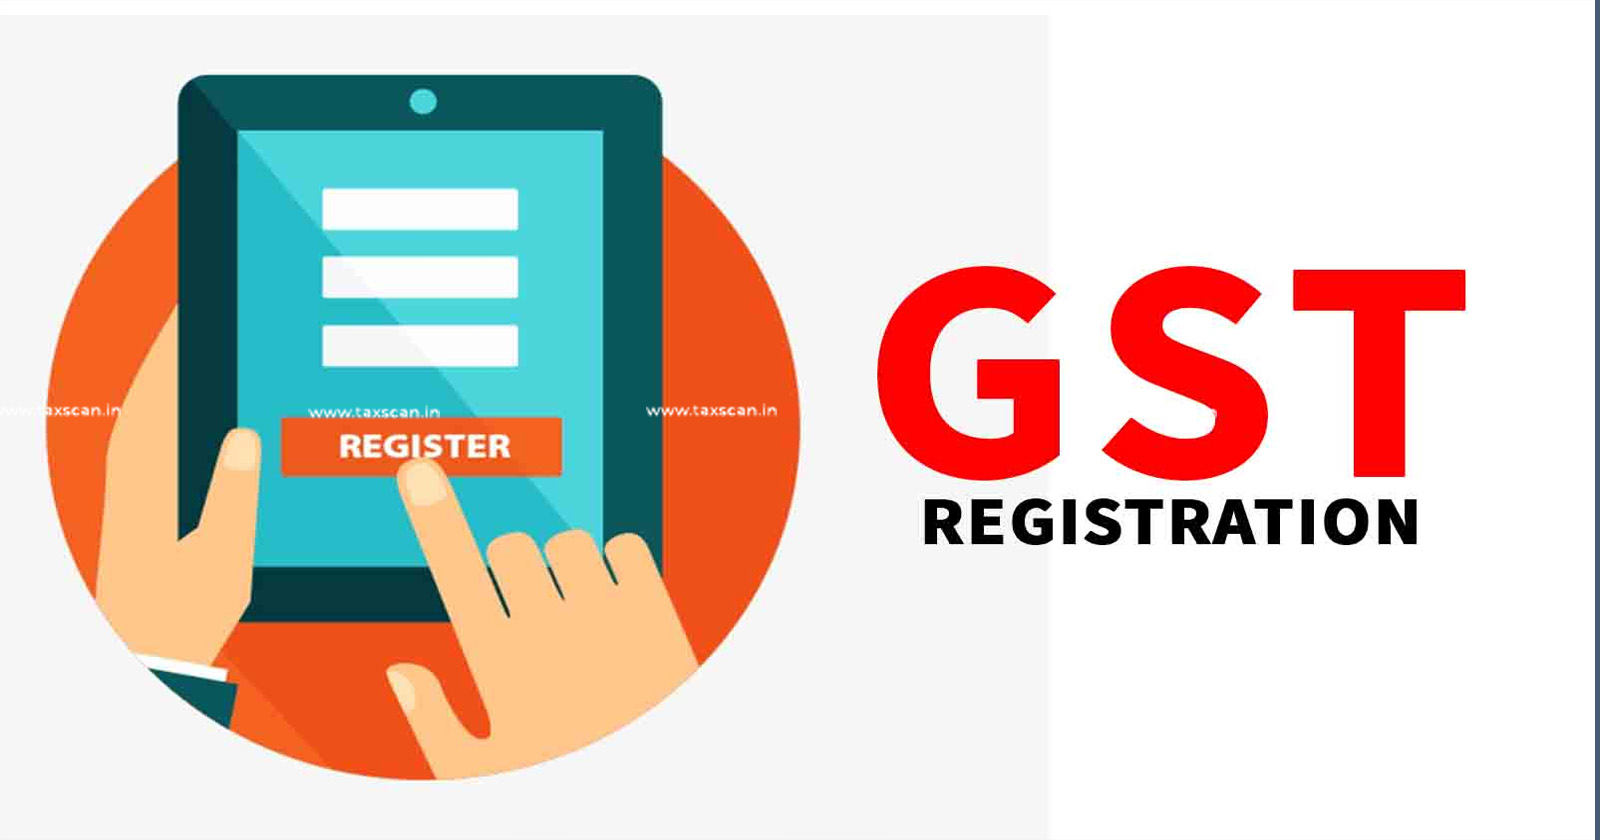 GST - Delhi High Court - GST Registration - GST Cancellation with Retrospective Effect - GST Cancellation - taxscan